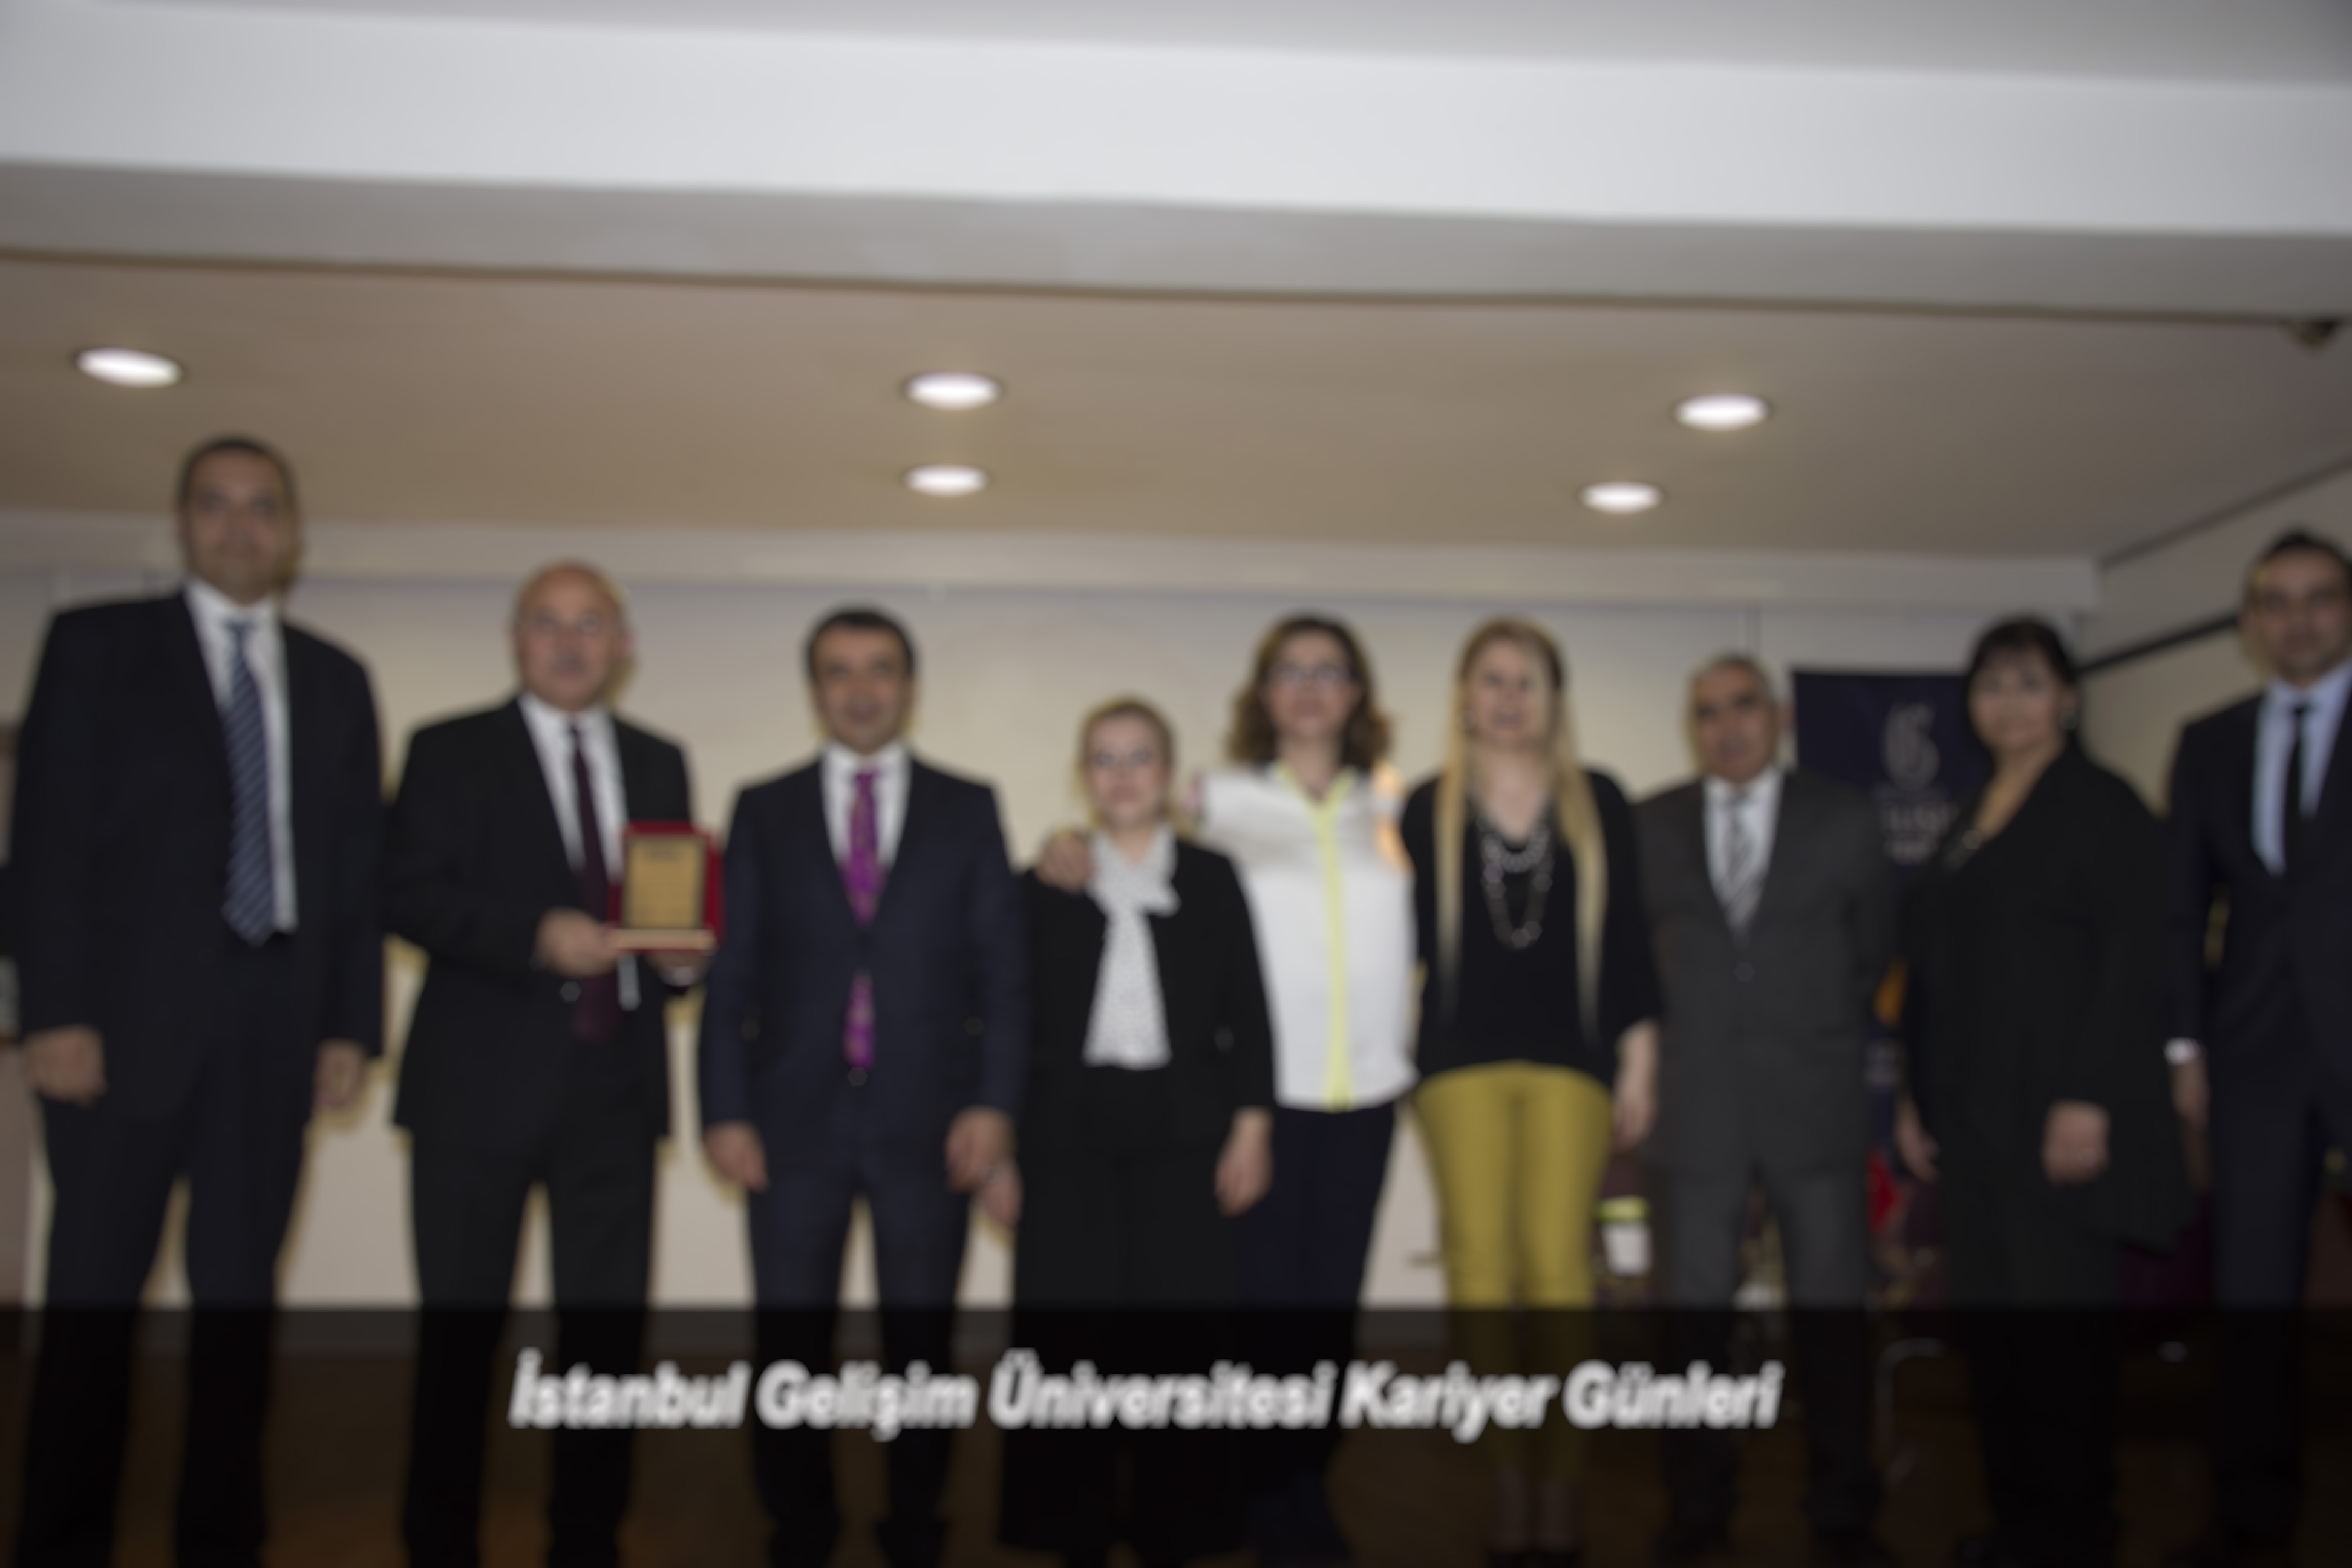 İstanbul Gelişim Üniversitesi Kariyer Günleri